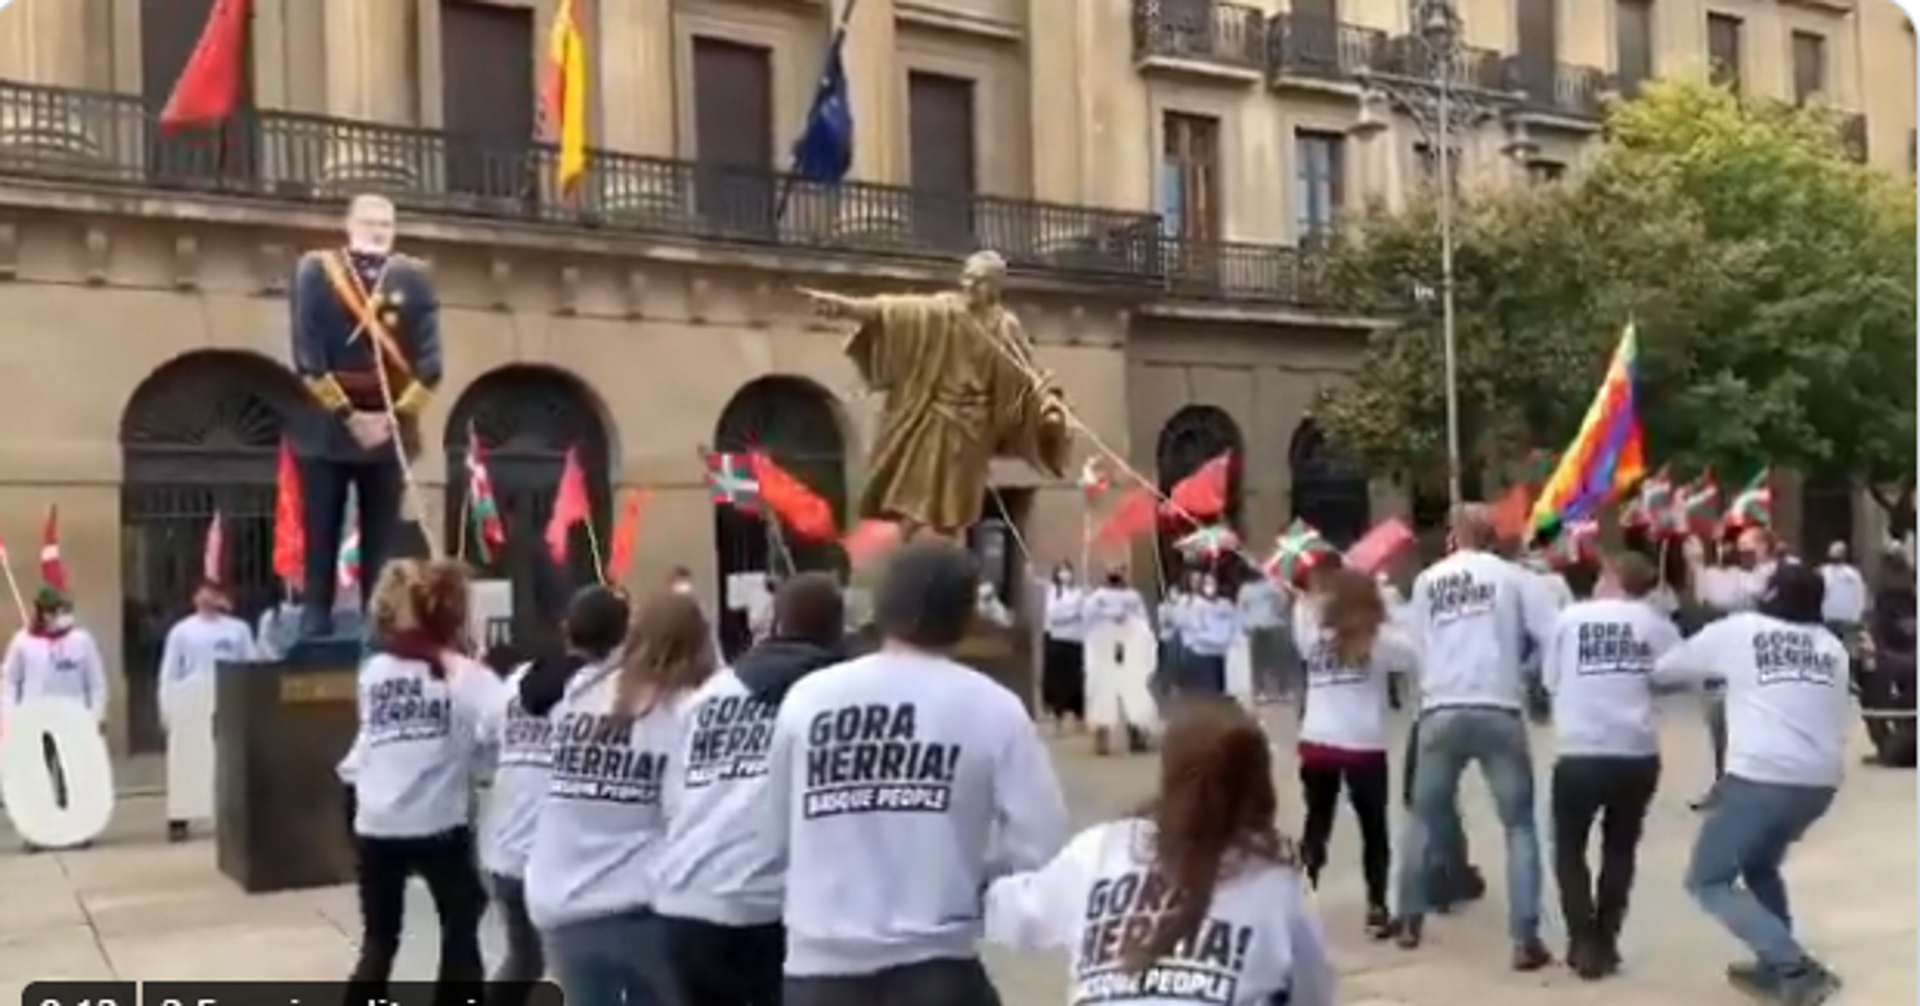 Vídeo: Enderrocament a l'estil basc a Pamplona